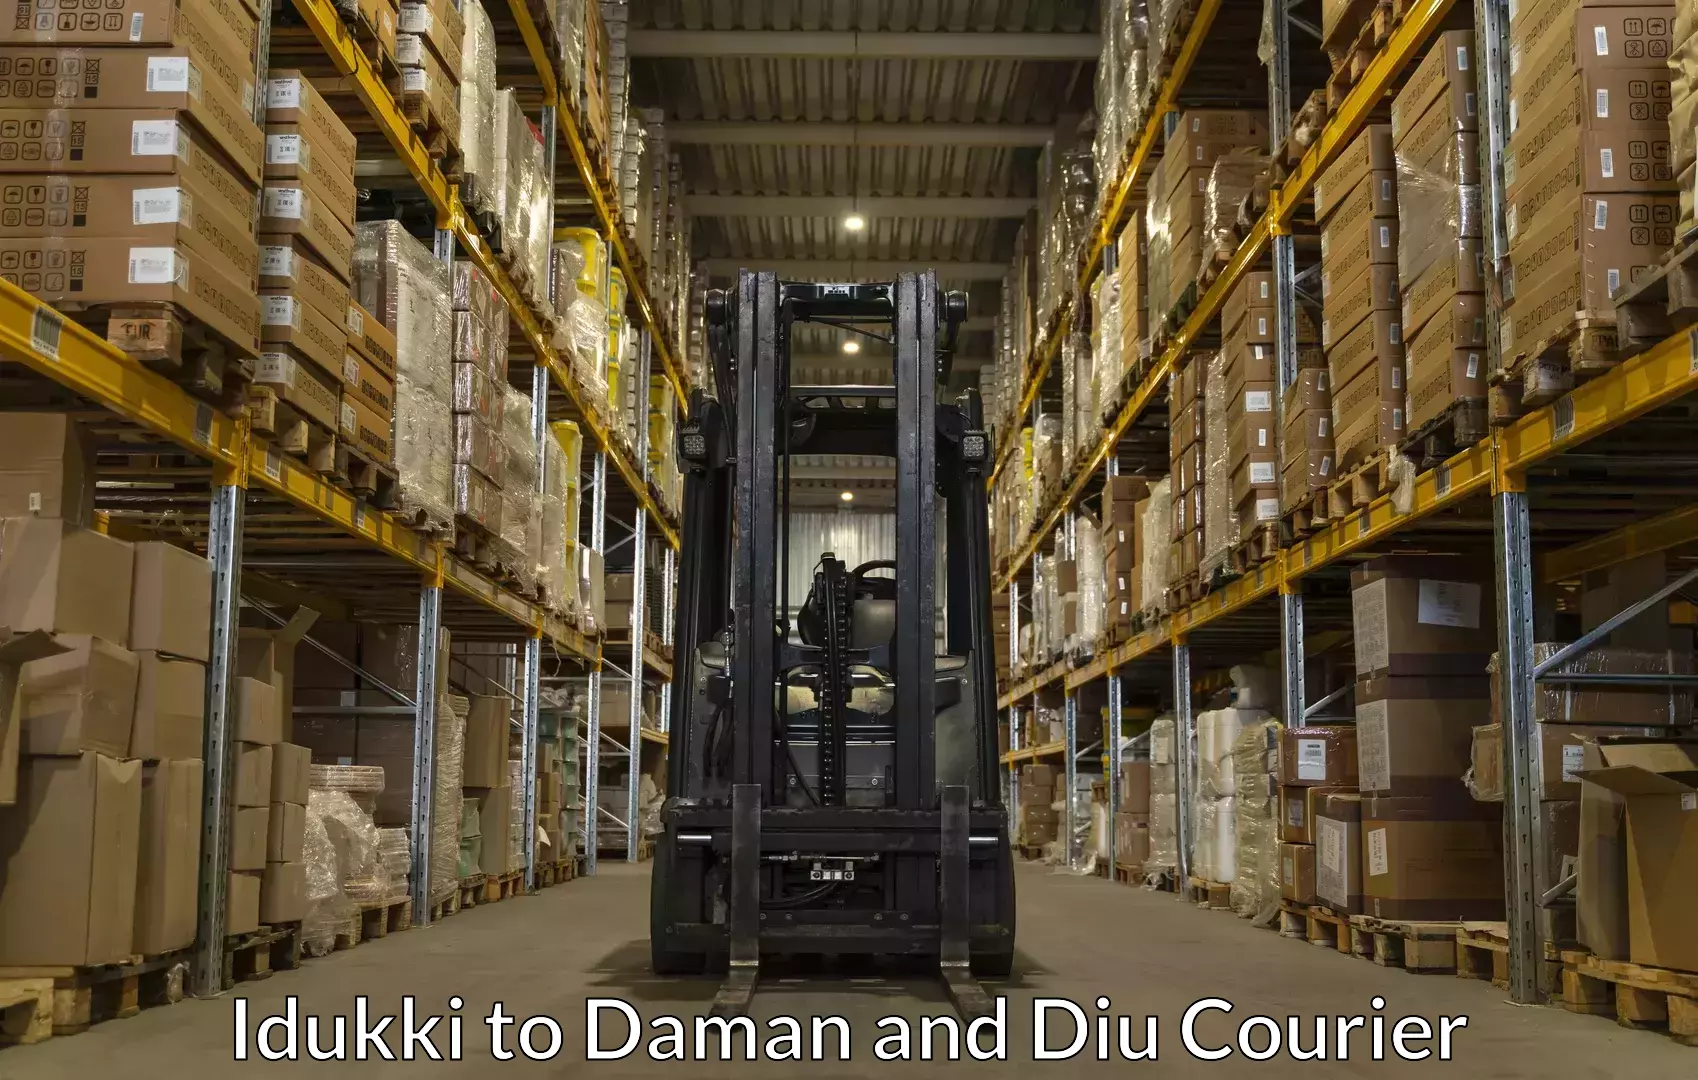 Luggage transfer service Idukki to Daman and Diu